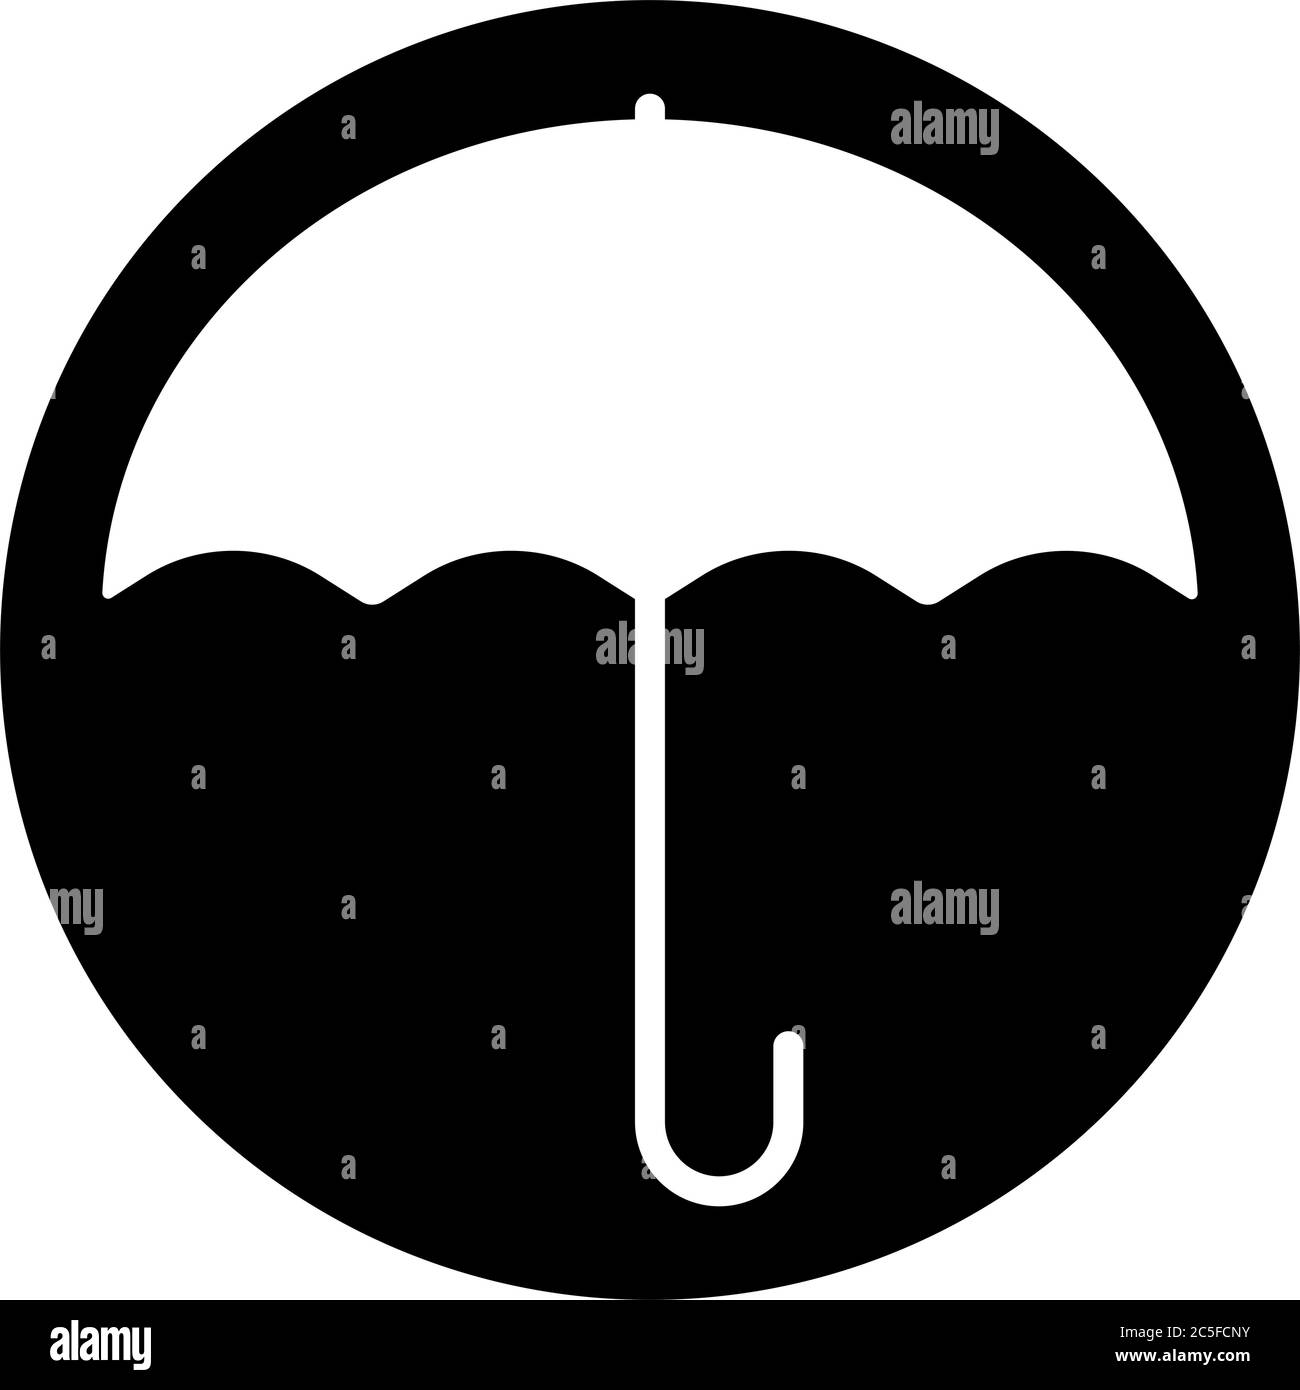 Paraguas abierto icono negro lluvia protección contra el clima ilustración vectorial aislada Ilustración del Vector